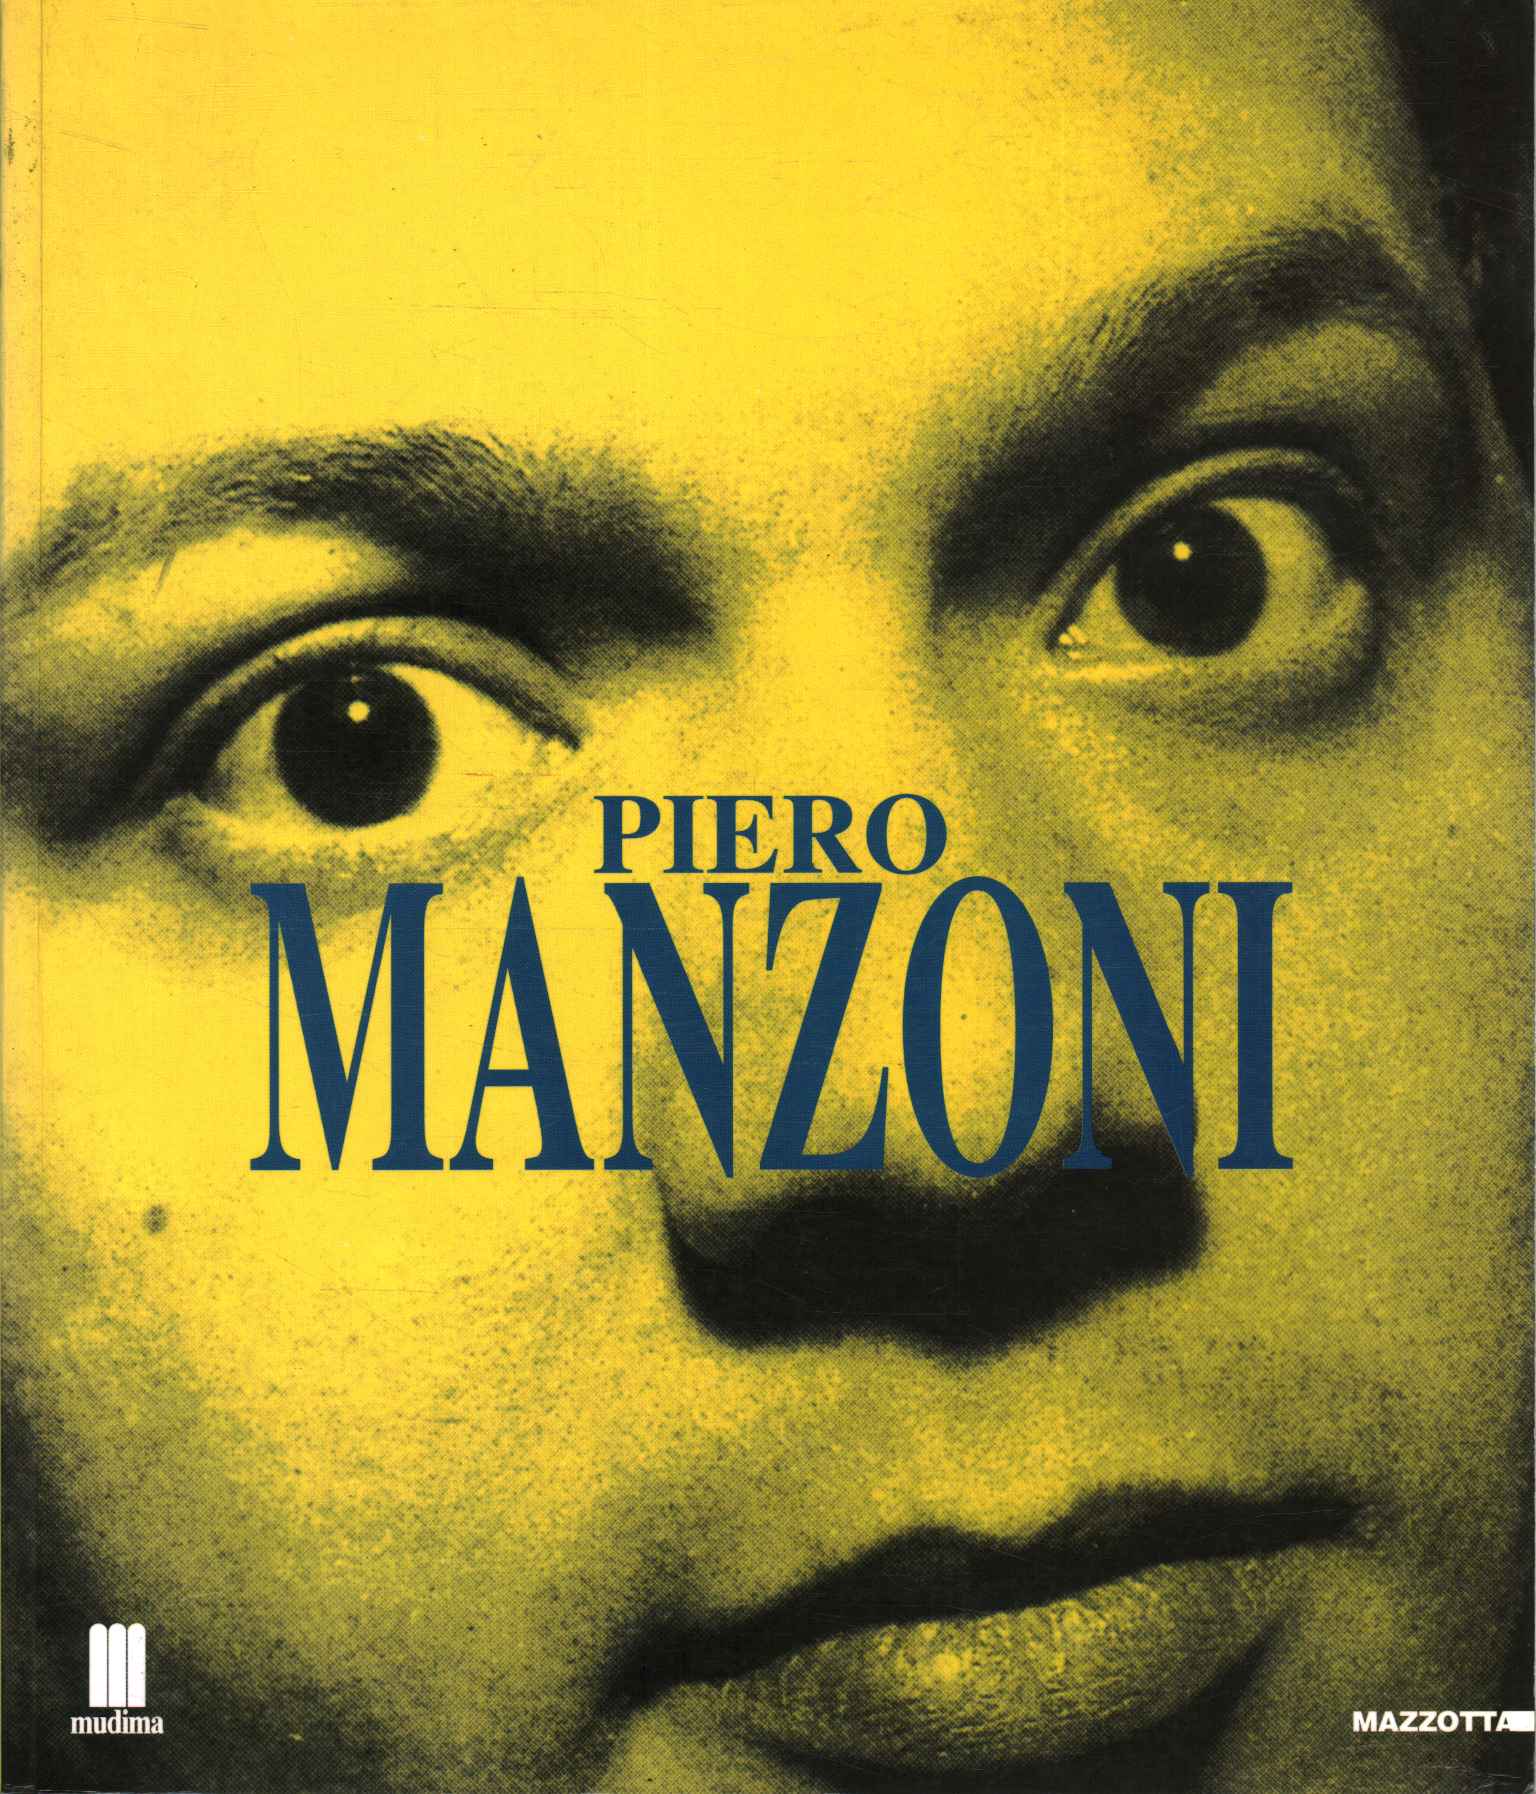 Piero Manzoni. Milan and mythology